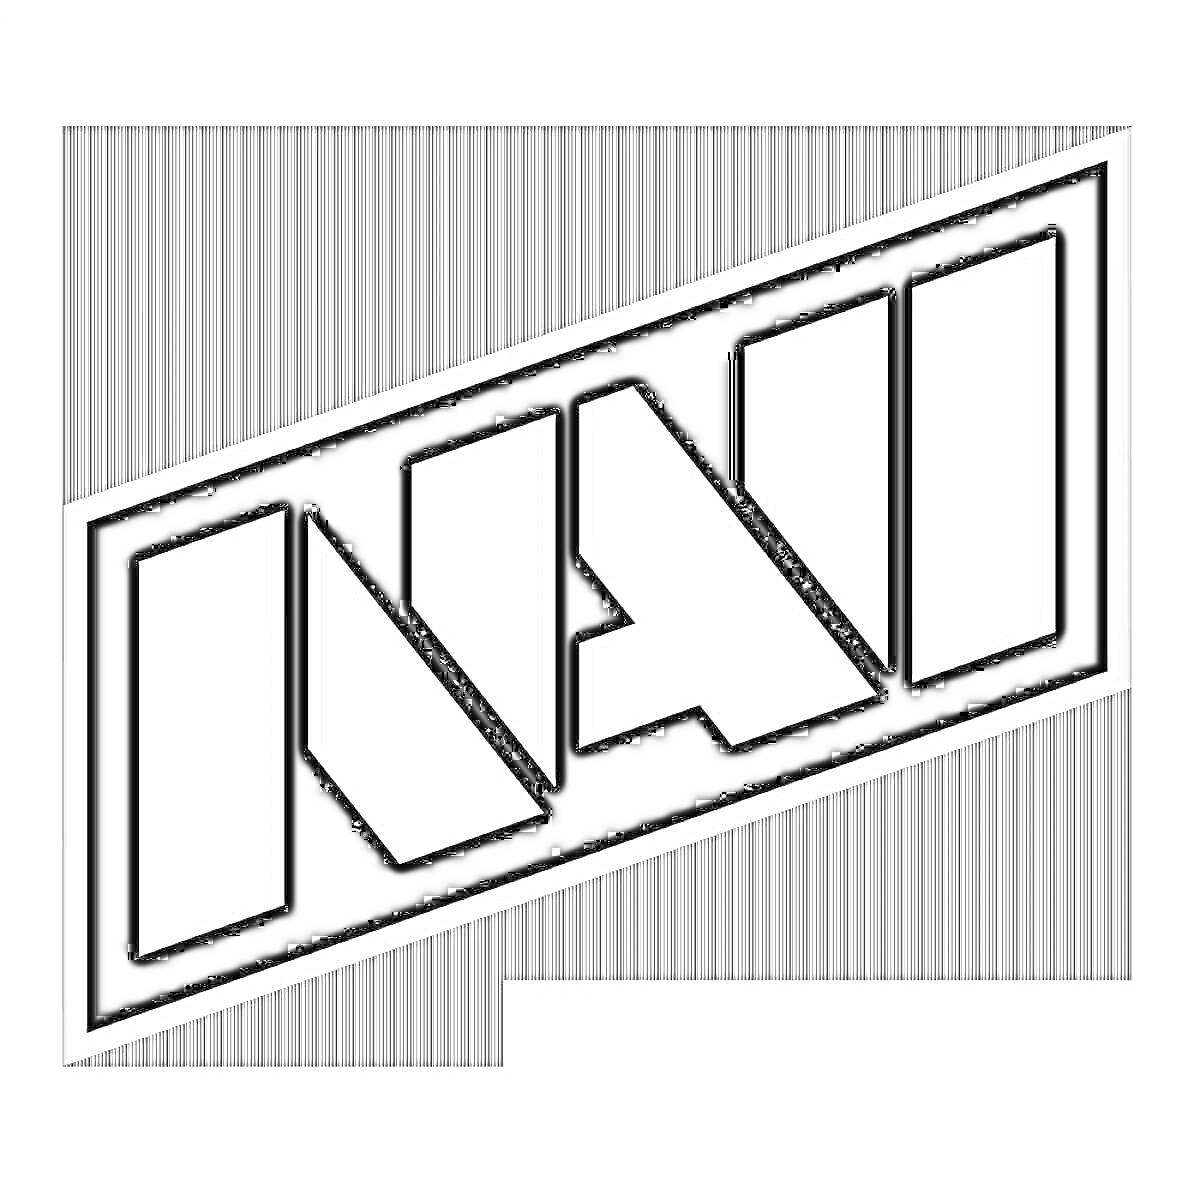 Логотип NAVI в рамке, черный текст на сером фоне